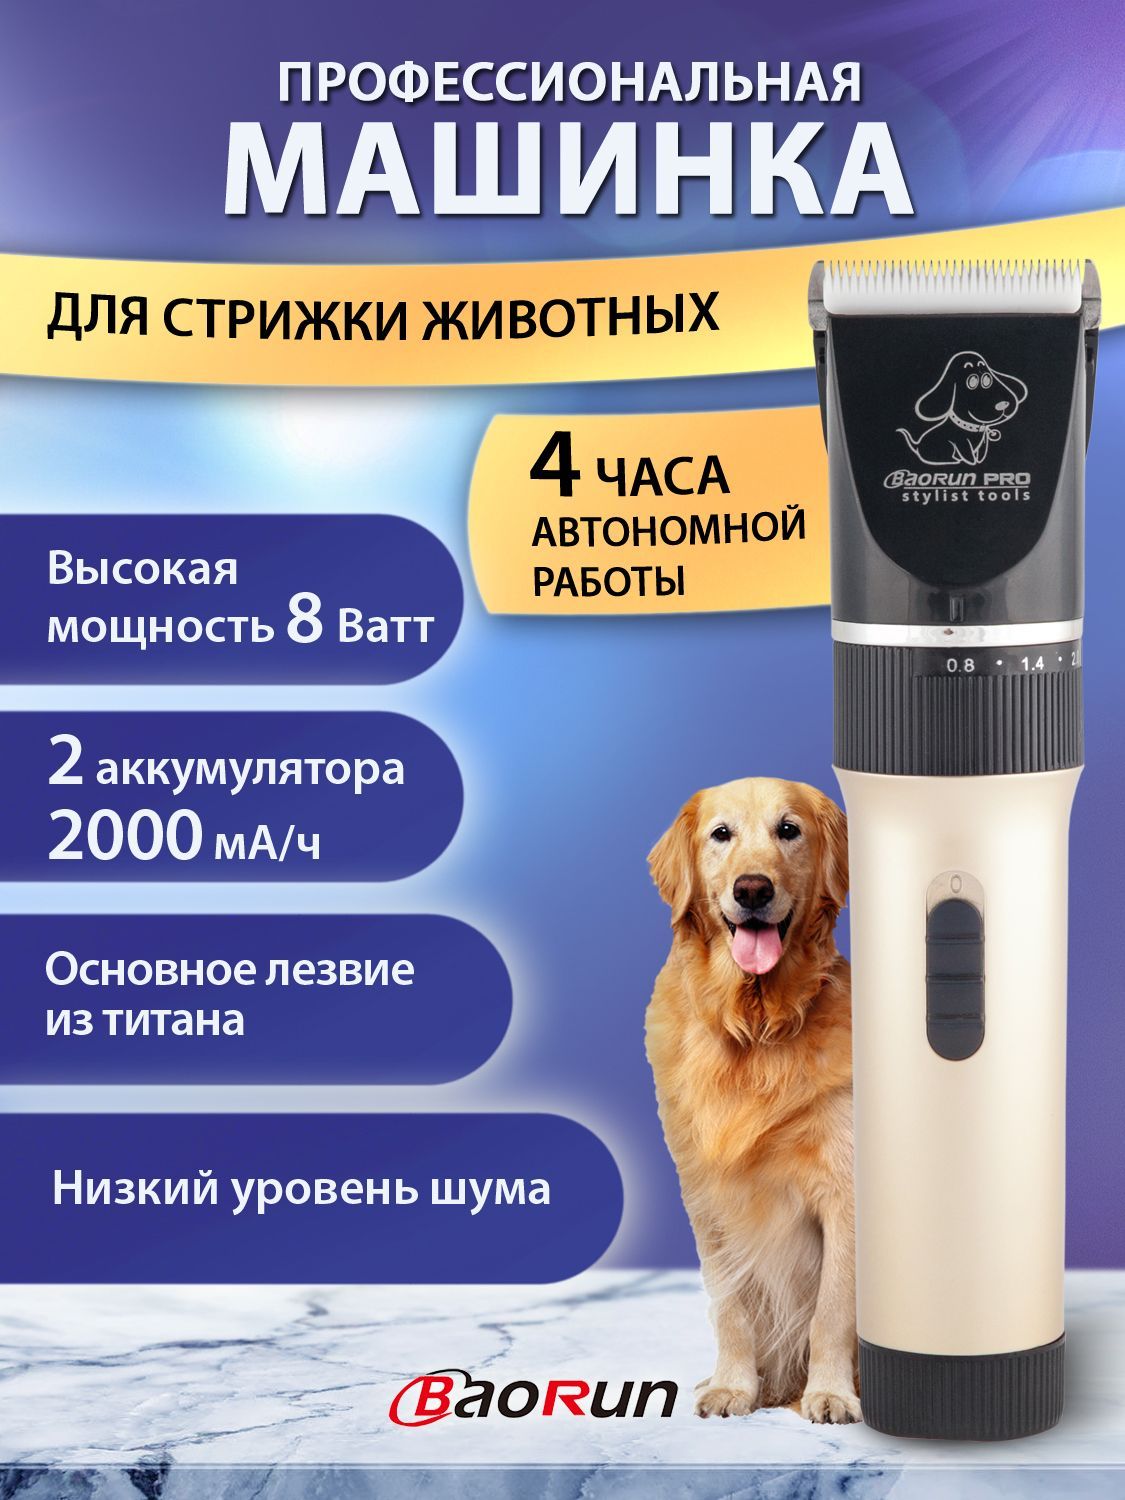 Baorun P6 Профессиональный триммер/ машинка для стрижки домашних животных:  кошек, собак. 4 насадки, регулировка под тип шерсти, аккумулятор 2000 мАч.